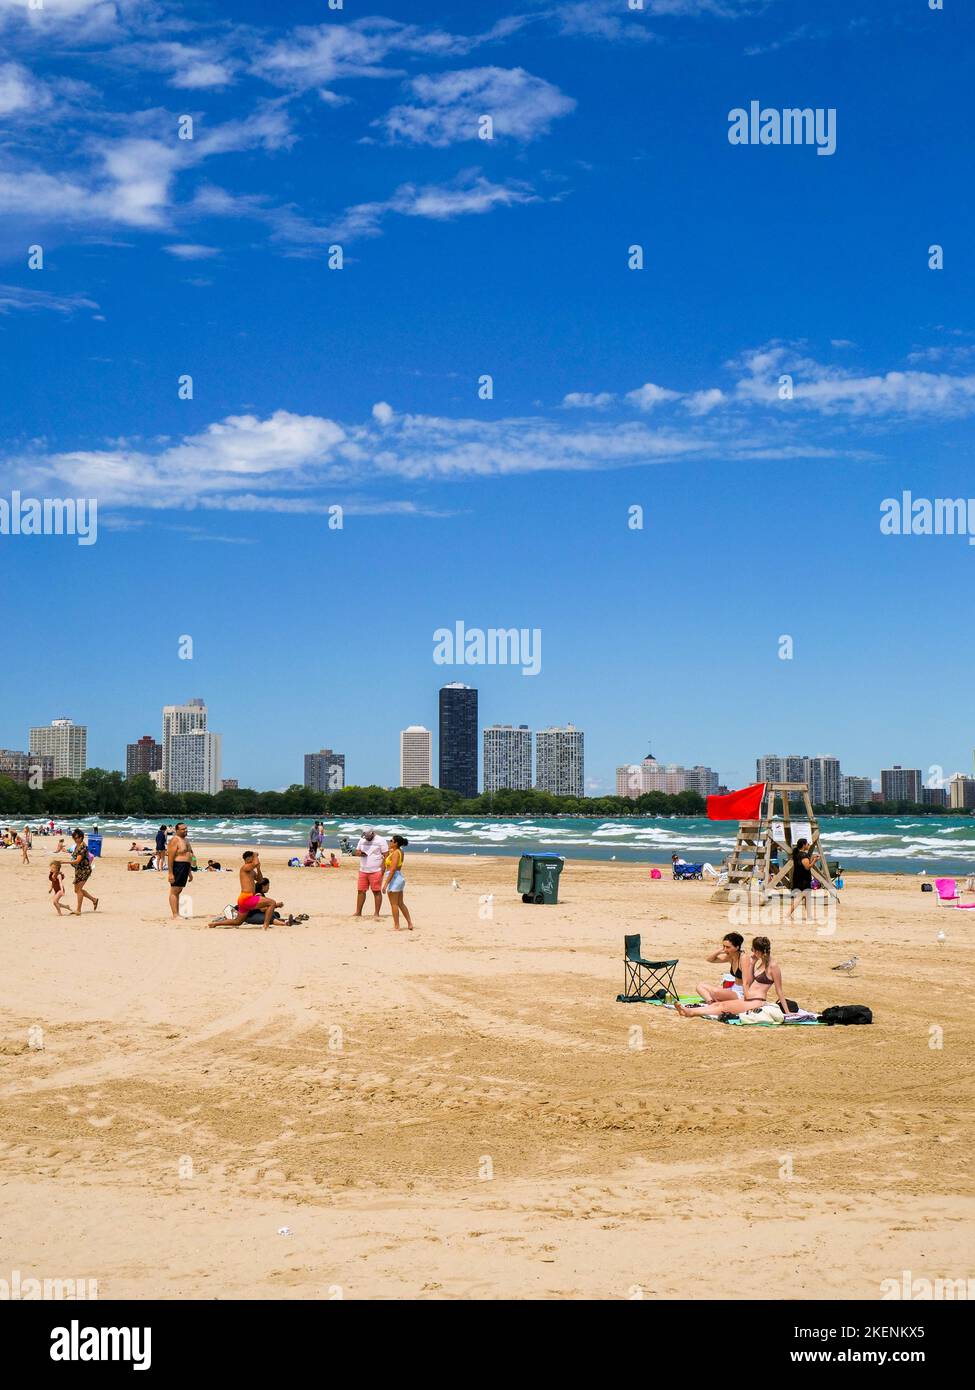 Montrose Beach, Chicago, Illinois. Die rote Flagge weist darauf hin, dass aufgrund der rauhen Brandung kein Schwimmen erlaubt ist. Stockfoto